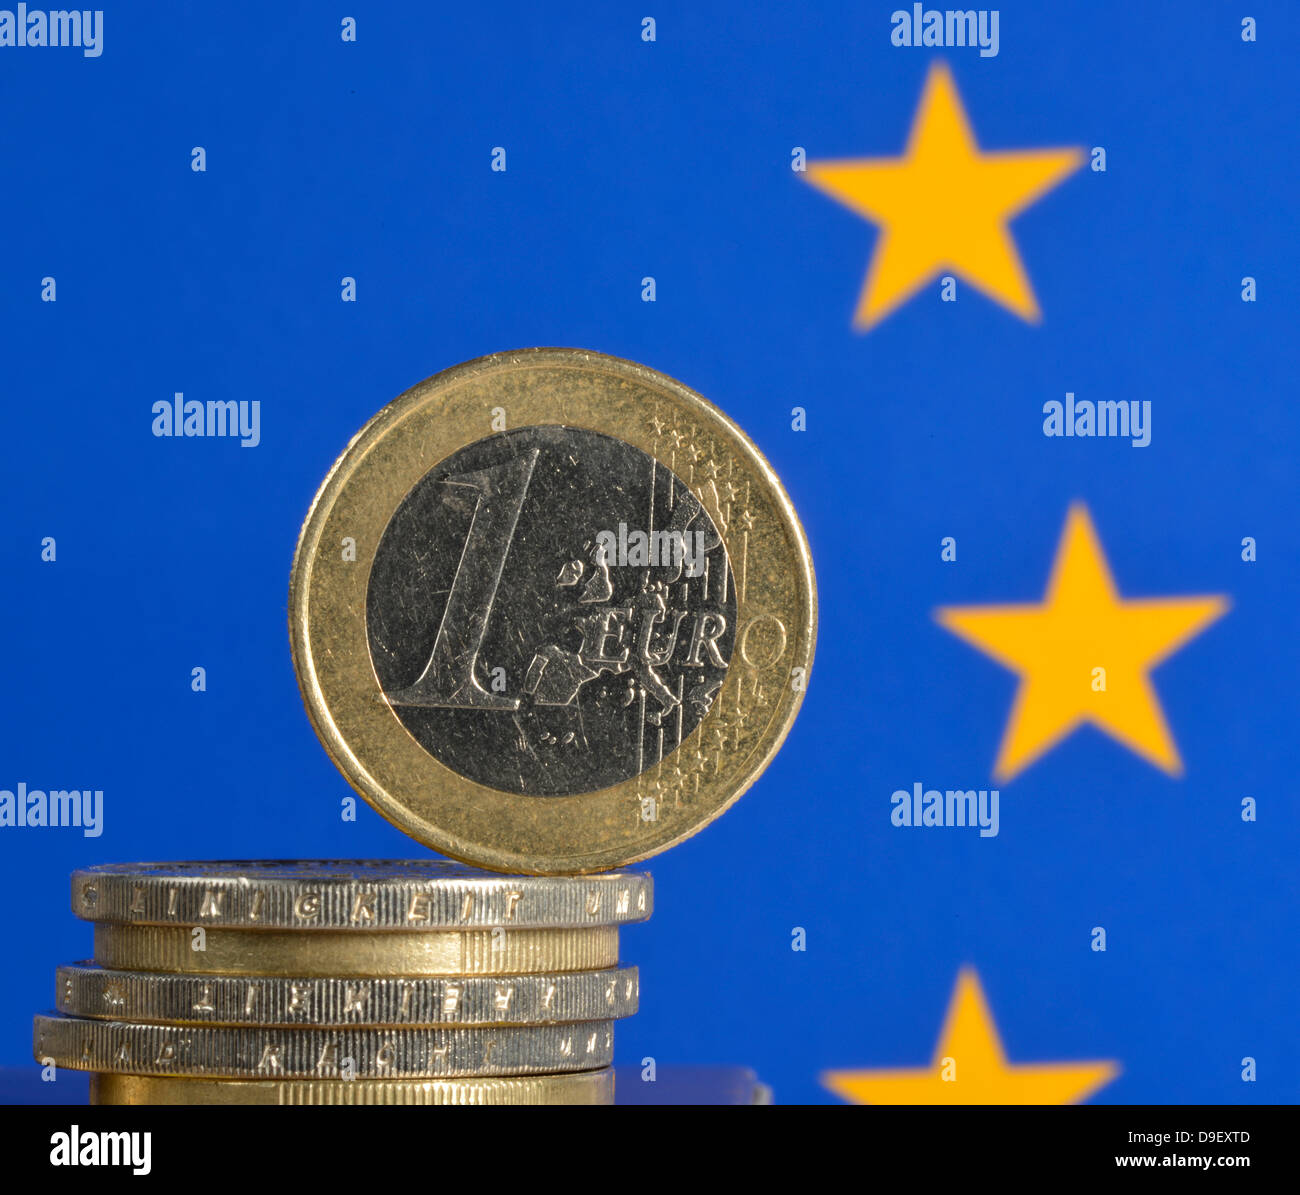 Euro-crisis, coins, European flag Stock Photo